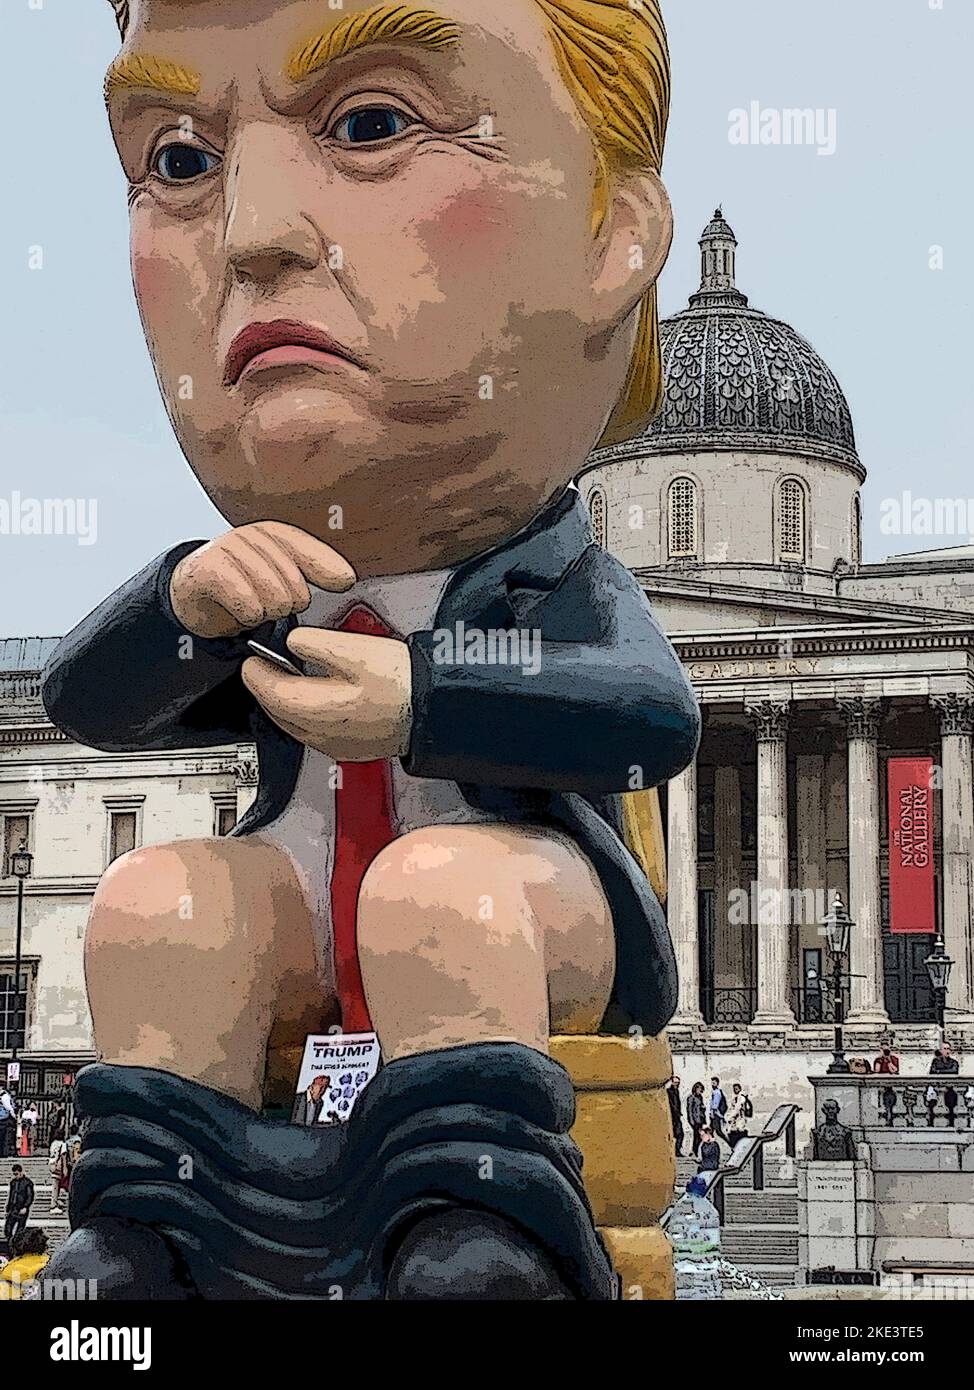 Illustratives Bildnis des Präsidenten der Vereinigten Staaten, Donald Trump, sitzt auf einer Toilette, twittert auf dem Trafalgar Square London UK. Stockfoto